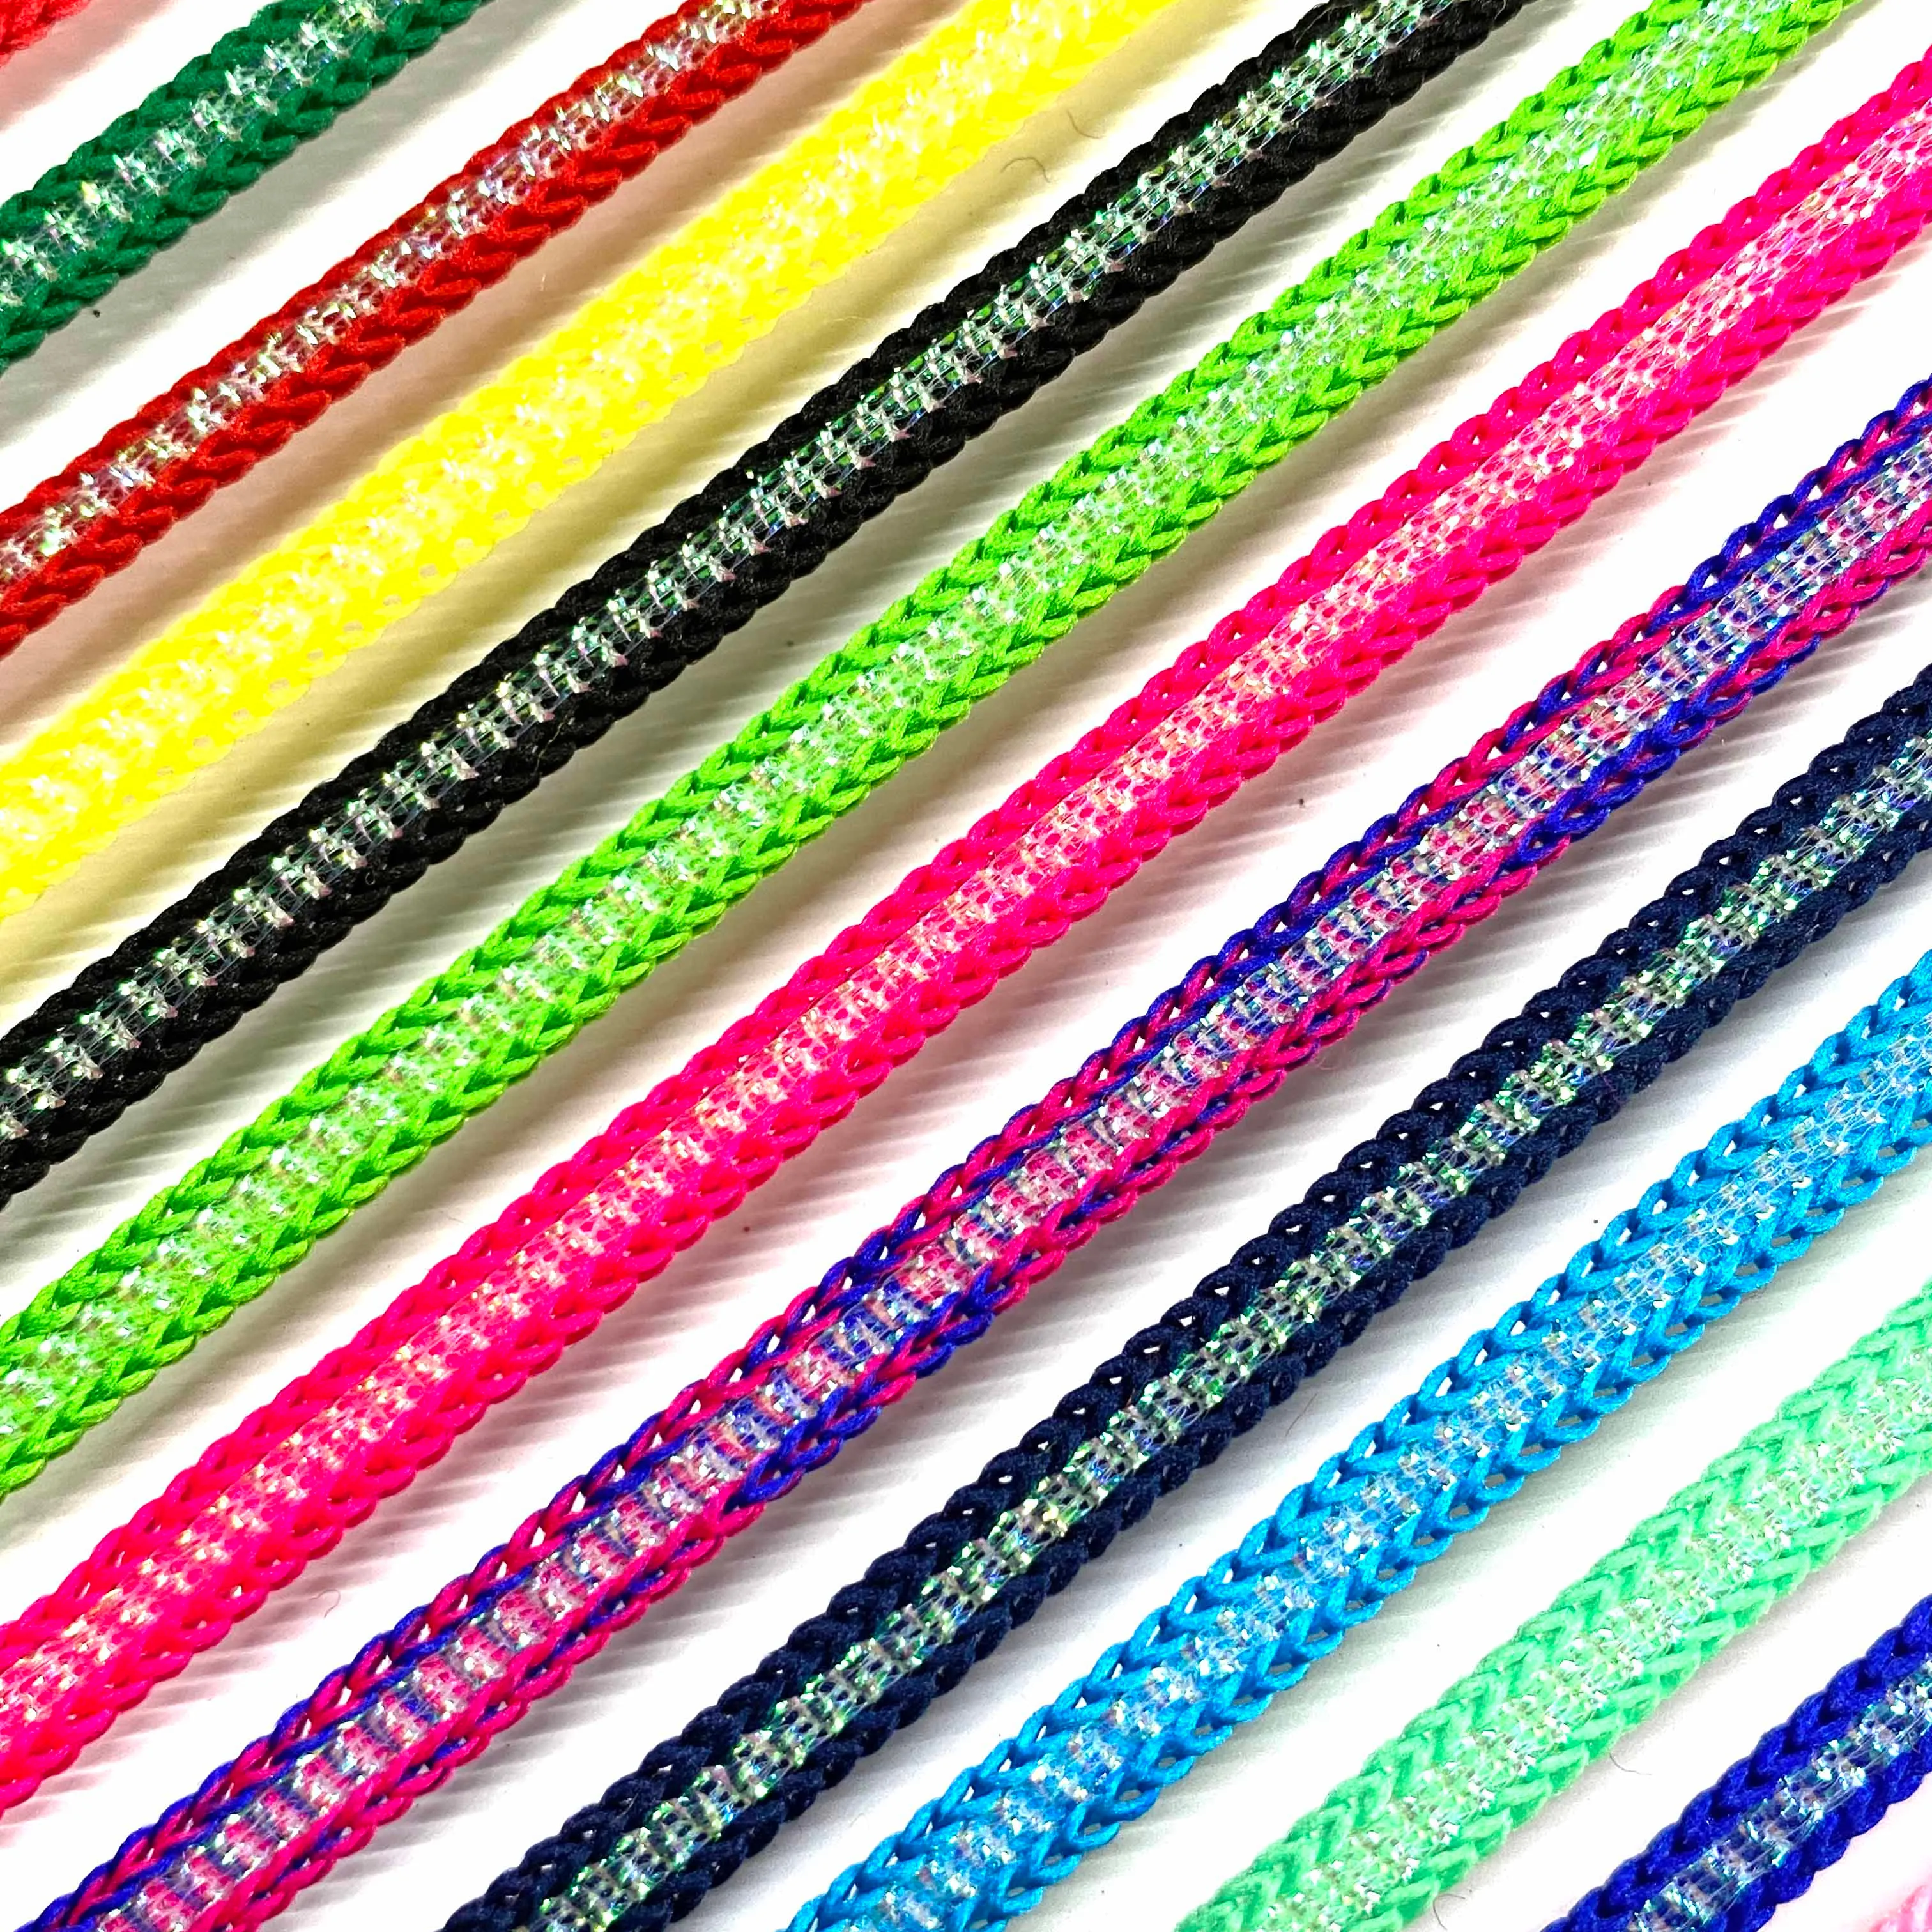 Corda metallica arcobaleno In poliestere corda 5MM cotone per realizzare artigianato e decorazioni di offerte di confezioni regalo all'ingrosso